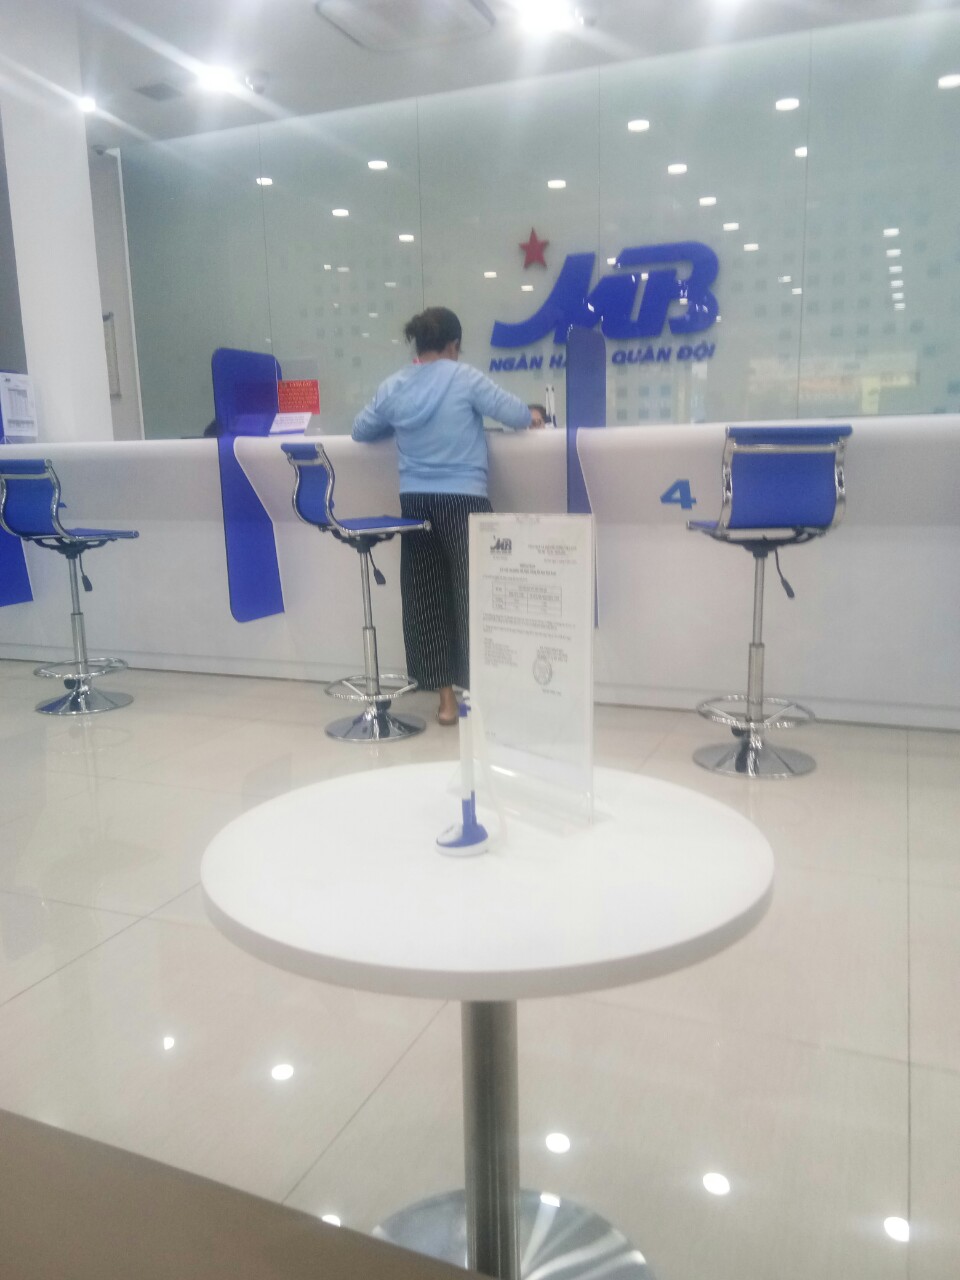 Cung cấp dịch vụ tạp vụ tại ngân hàng MB - Miền Nam